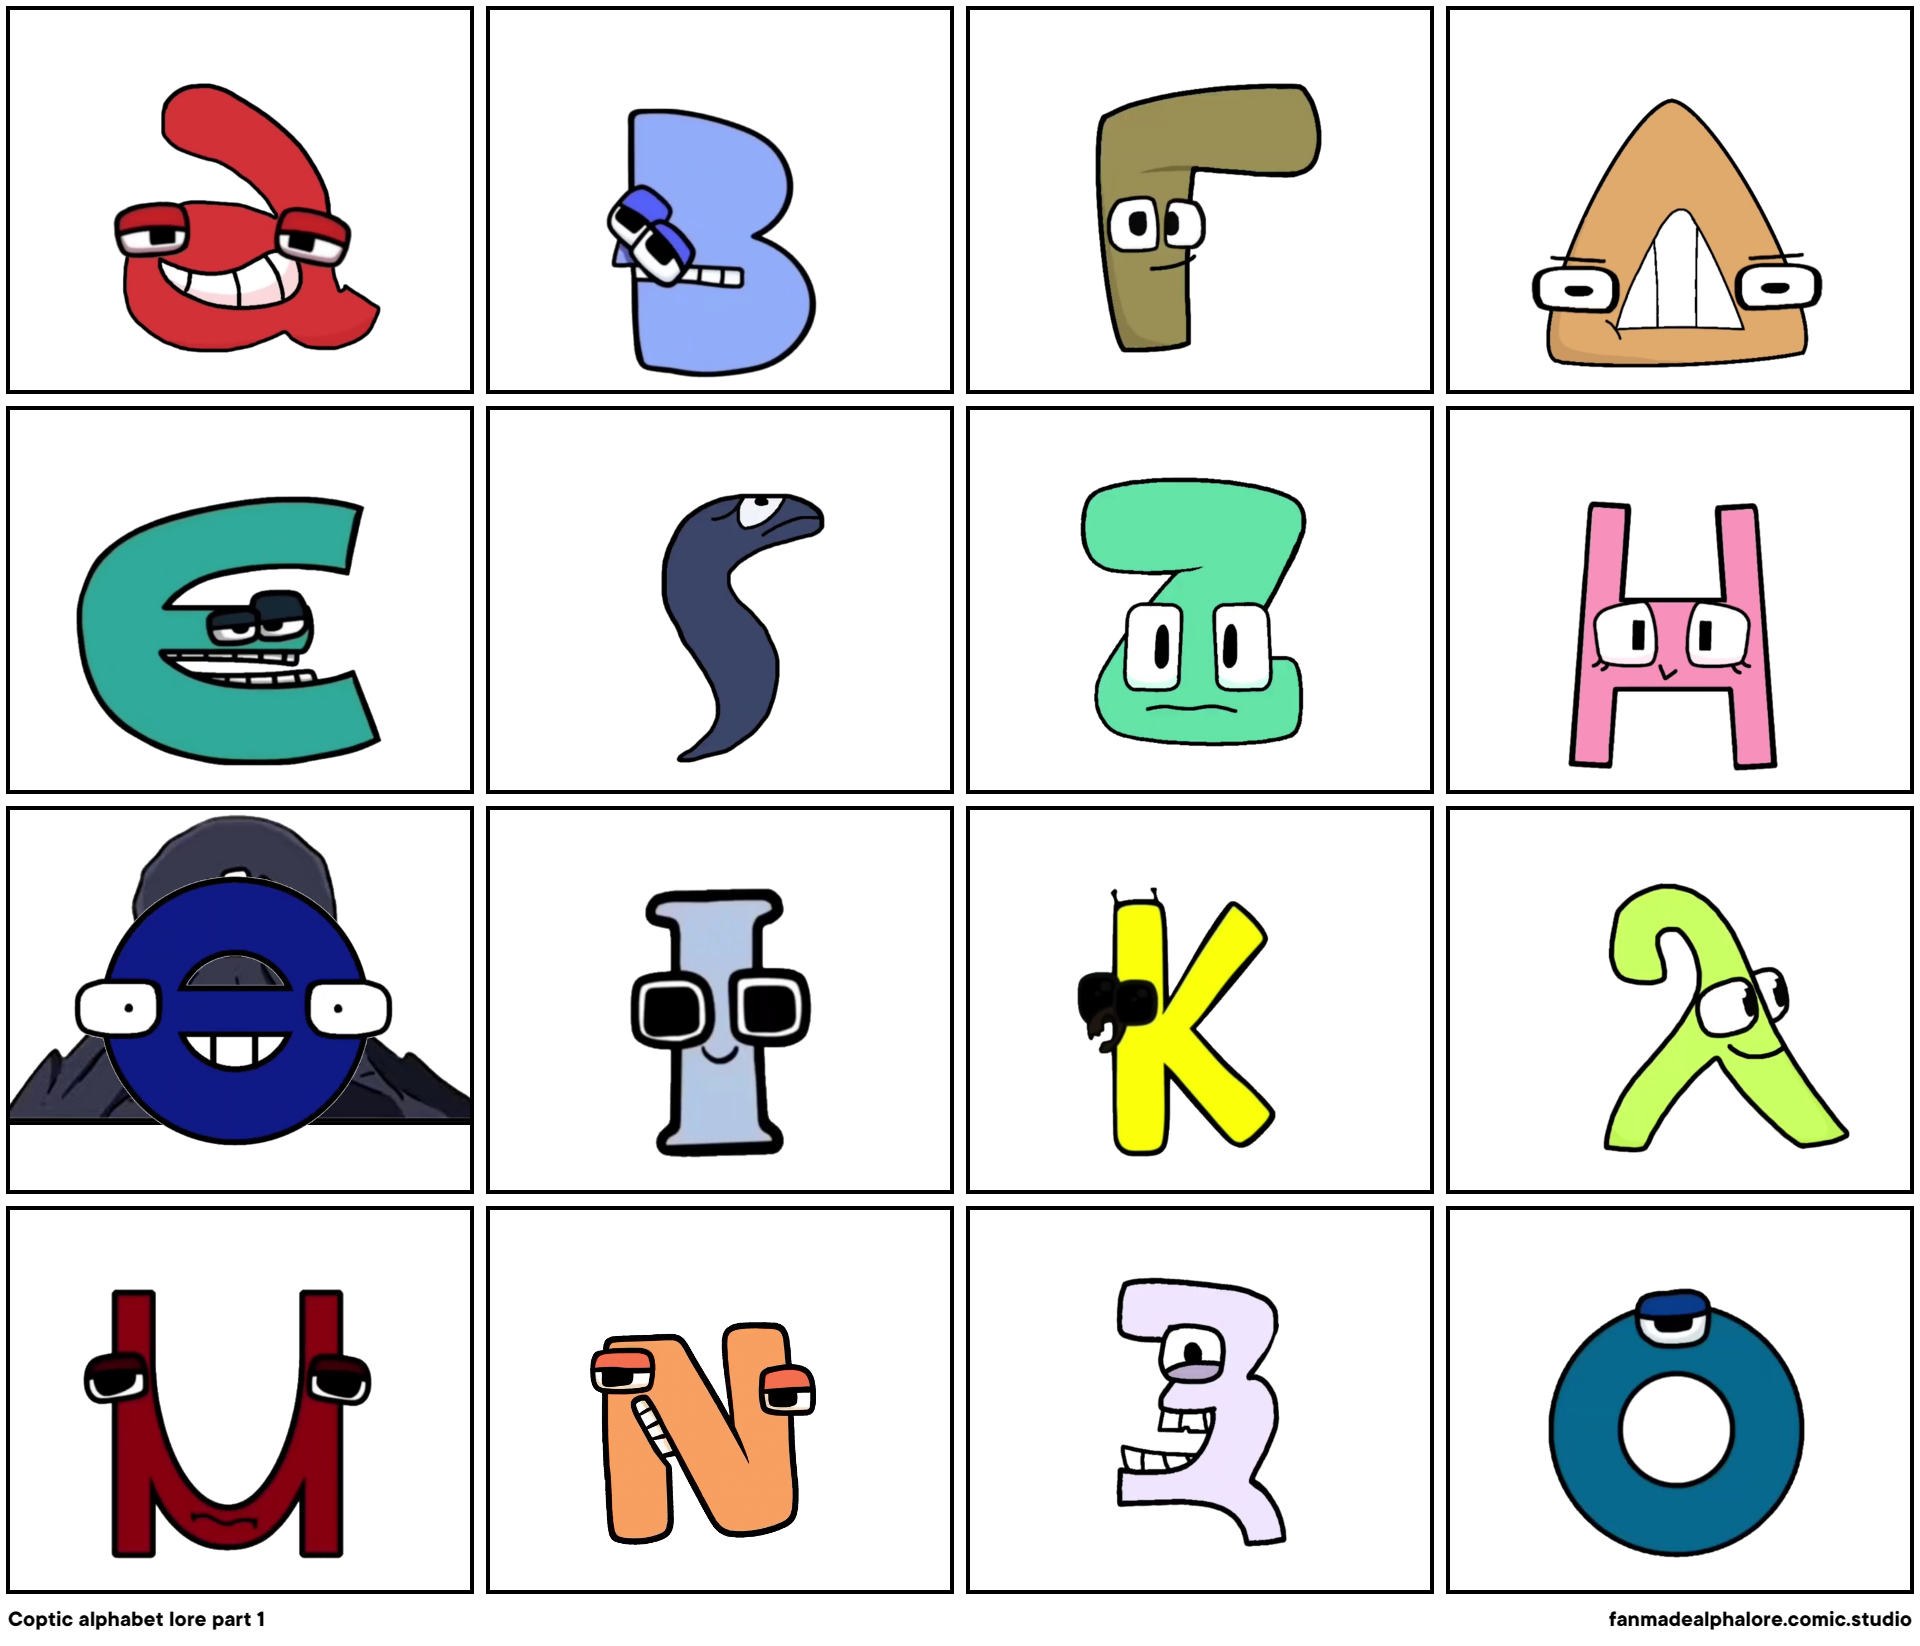 Coptic alphabet lore part 1 - Comic Studio